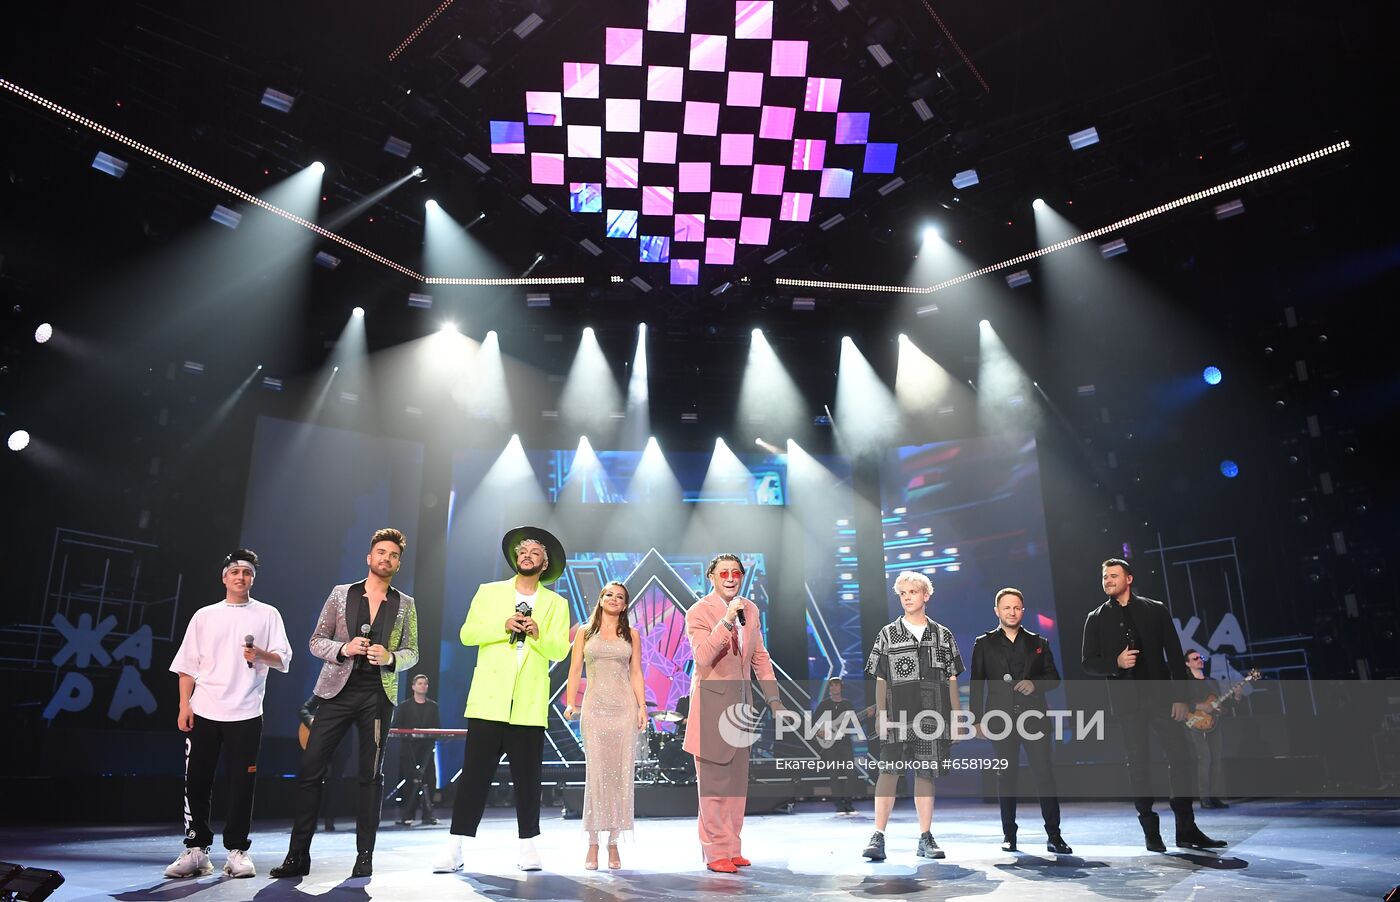 Открытие 5-го международного музыкального фестиваля "Жара"